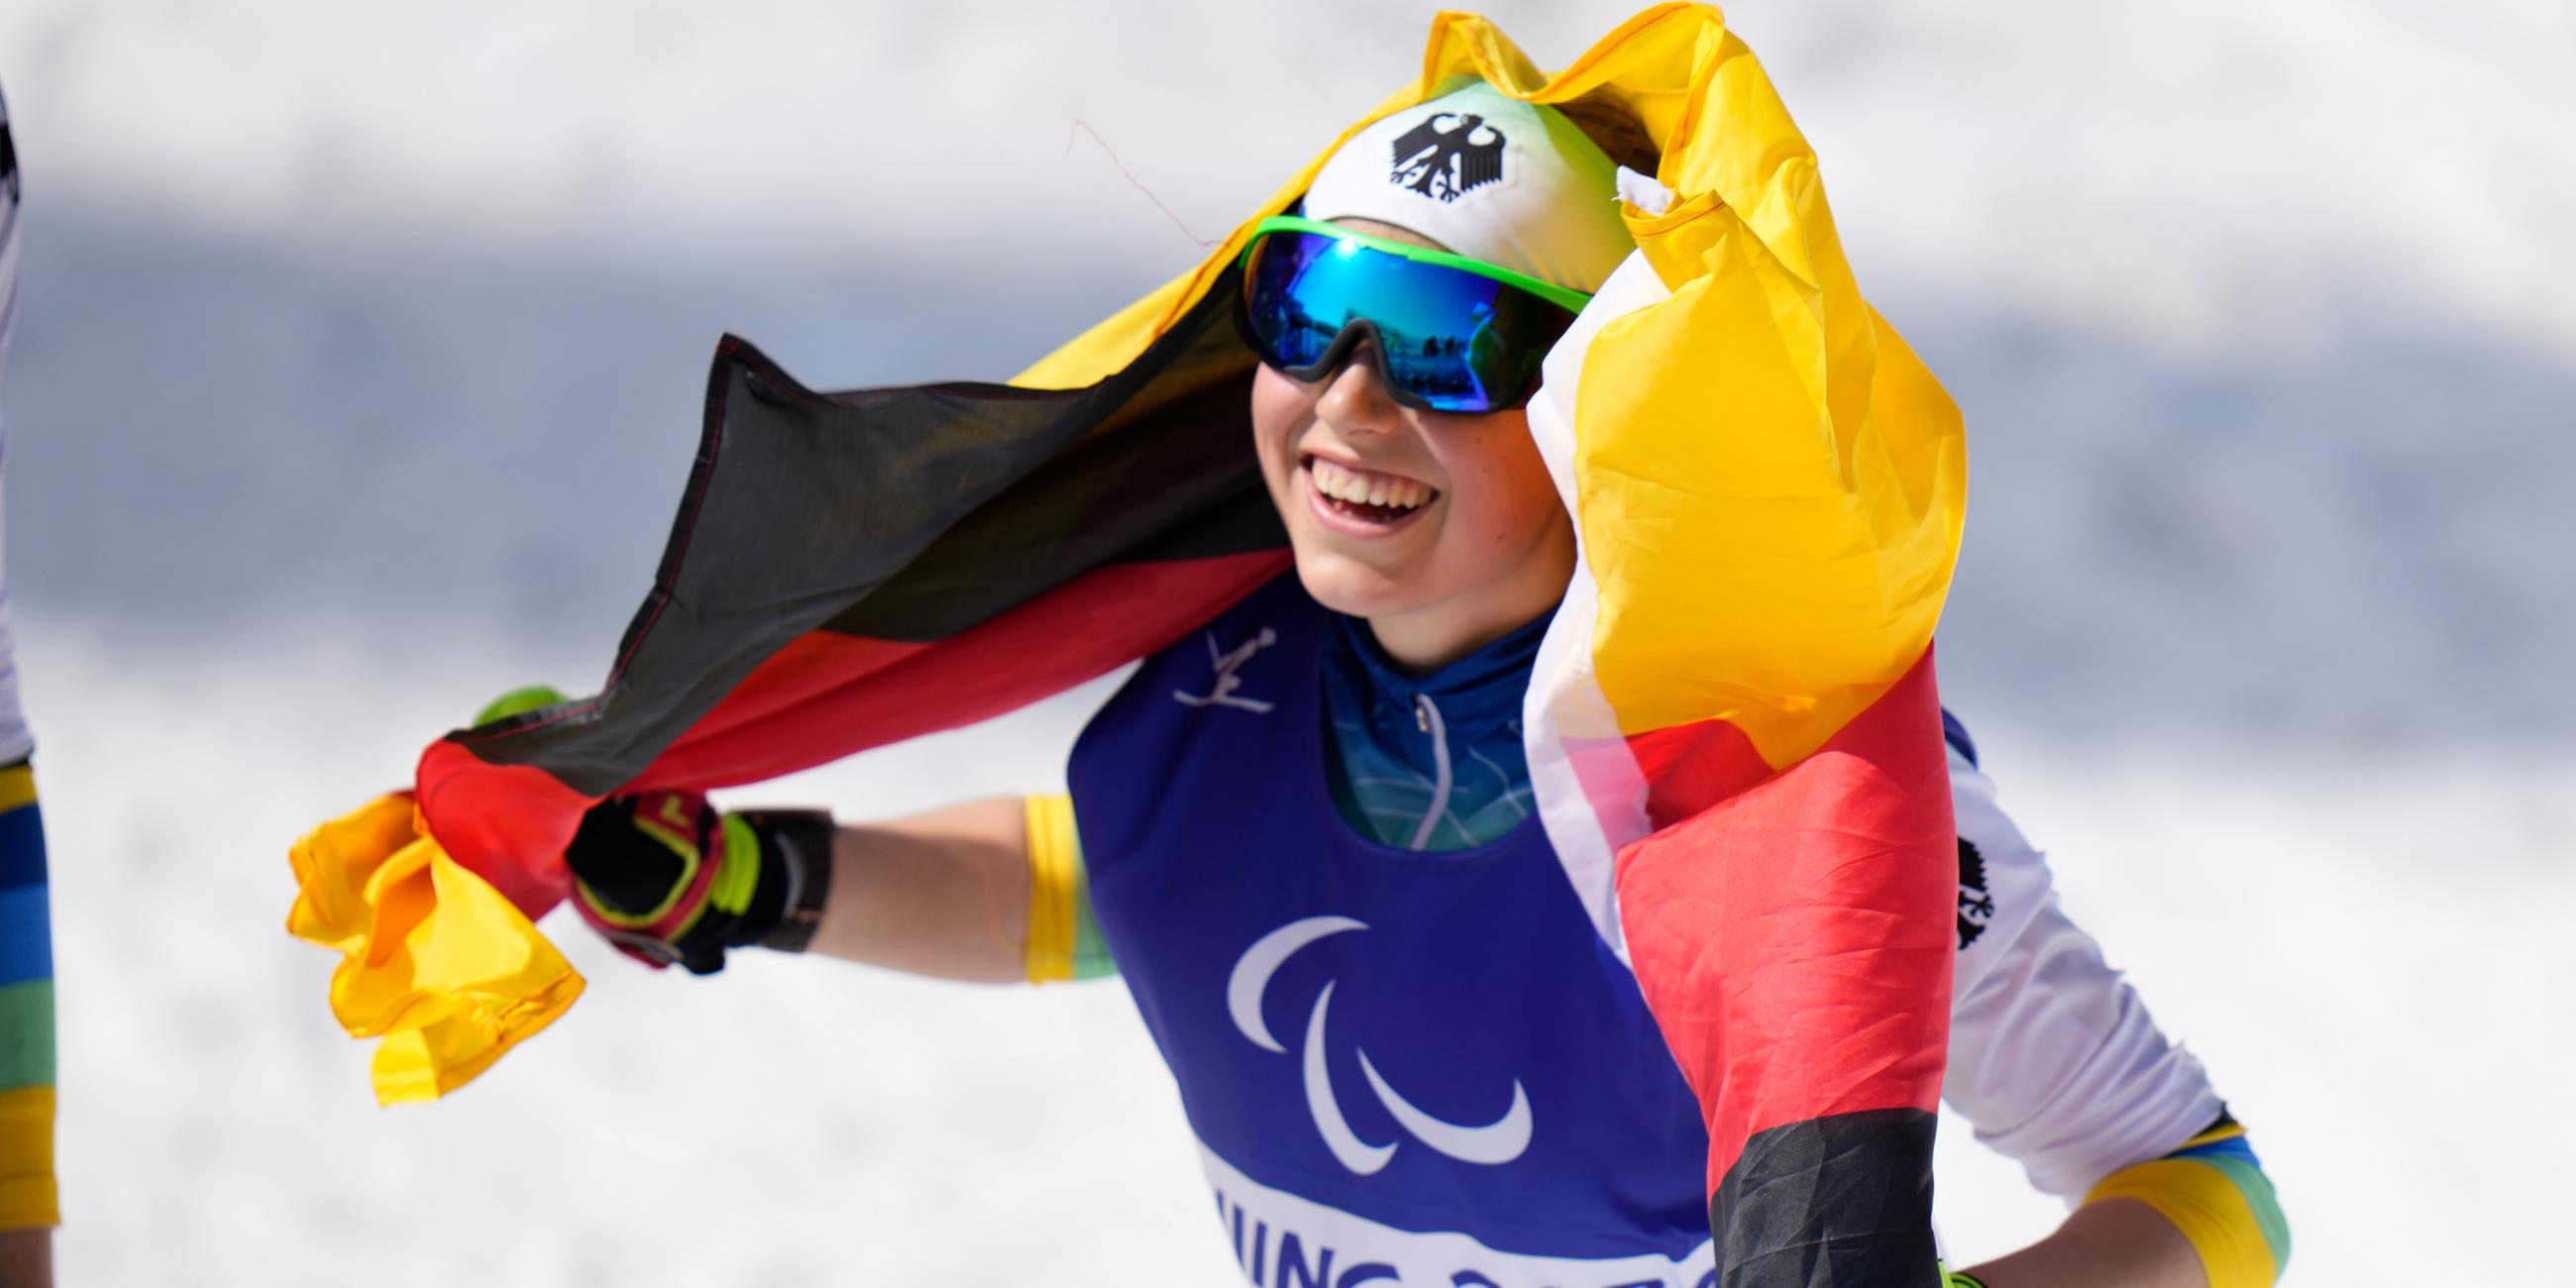 12.03.2022, Zhangjiakou, China: Linn Kazmaier jubelt über ihre Goldmedaille bei den Paralympics 2022